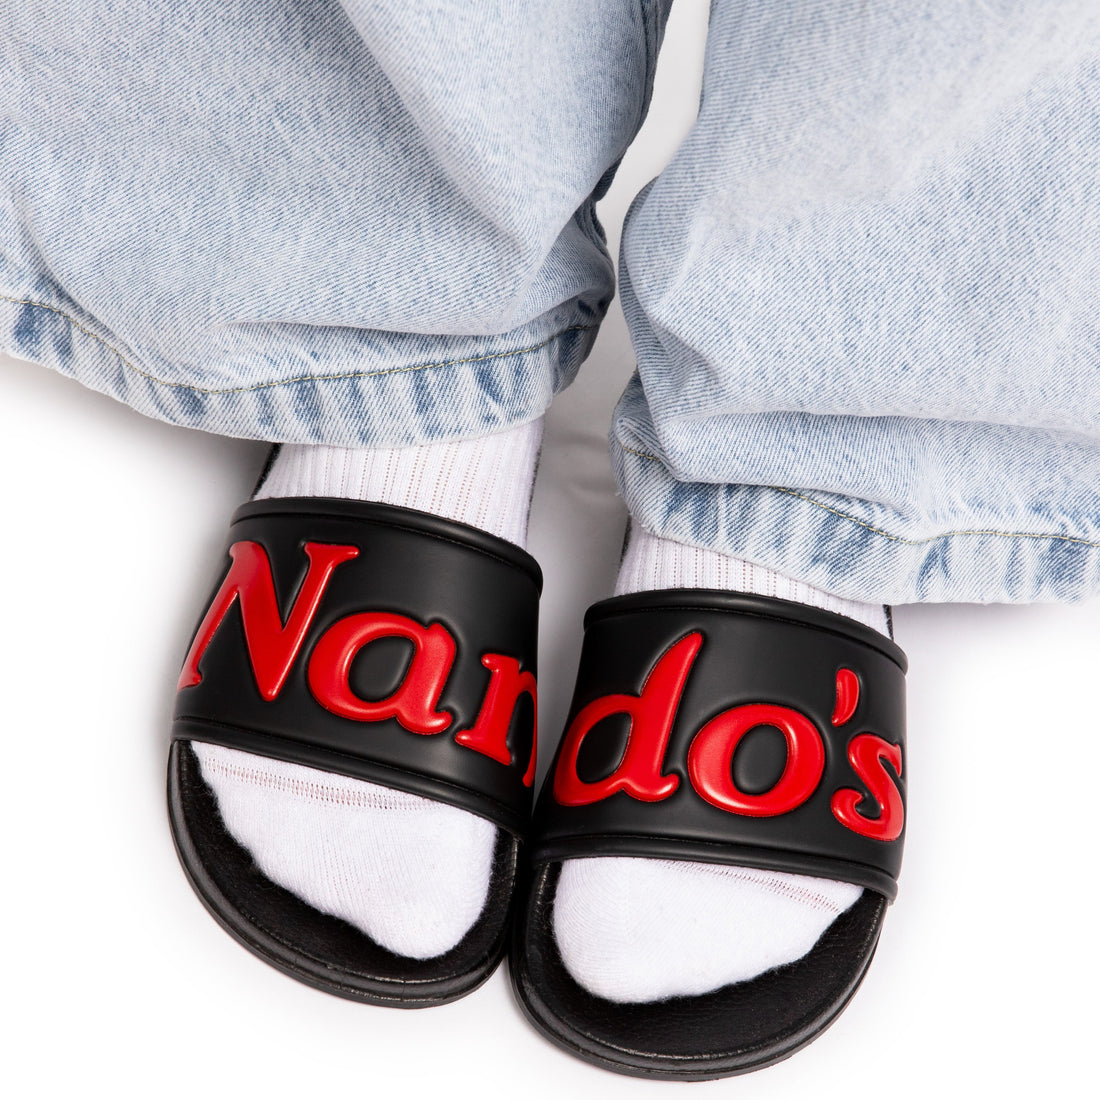 The Nando’s Sliders 